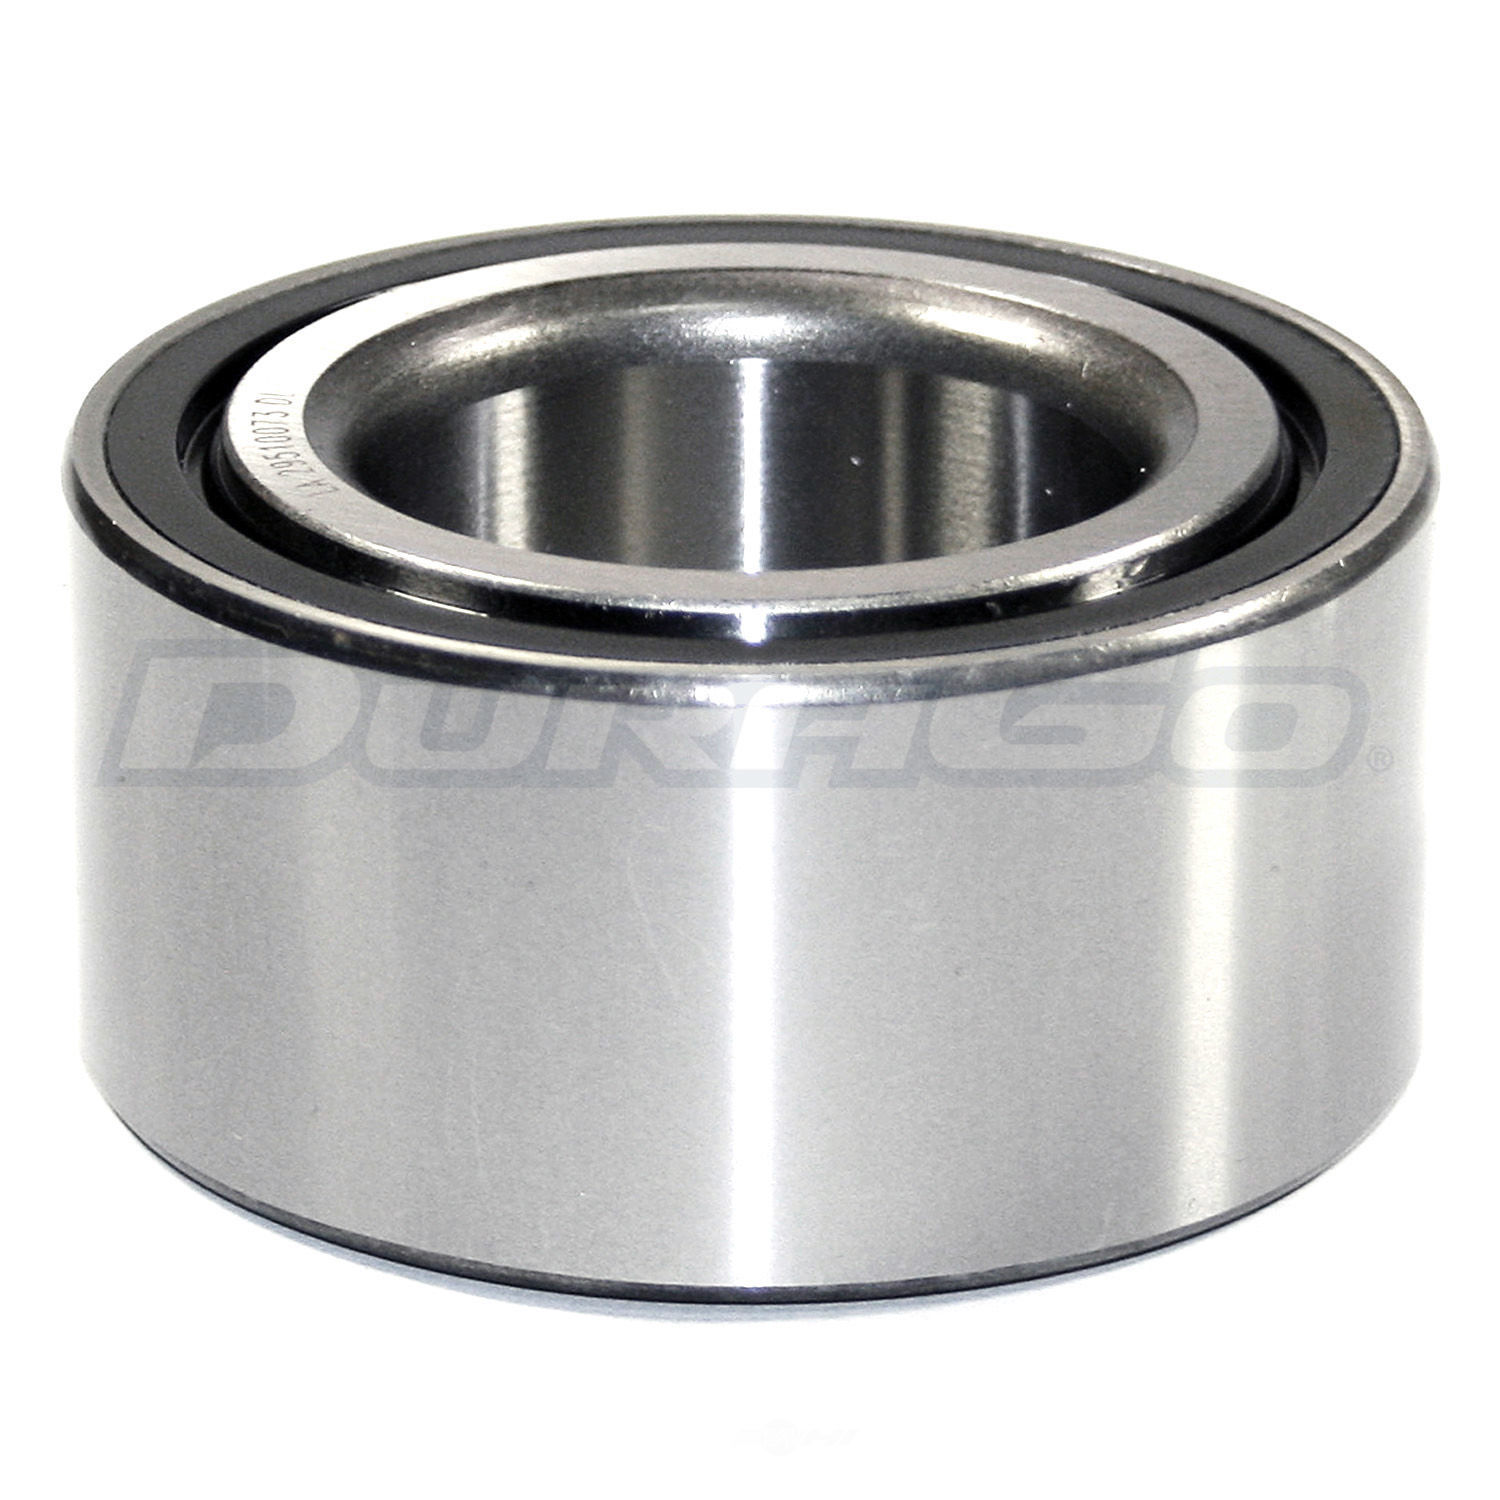 DURAGO - Wheel Bearing - D48 295-10073